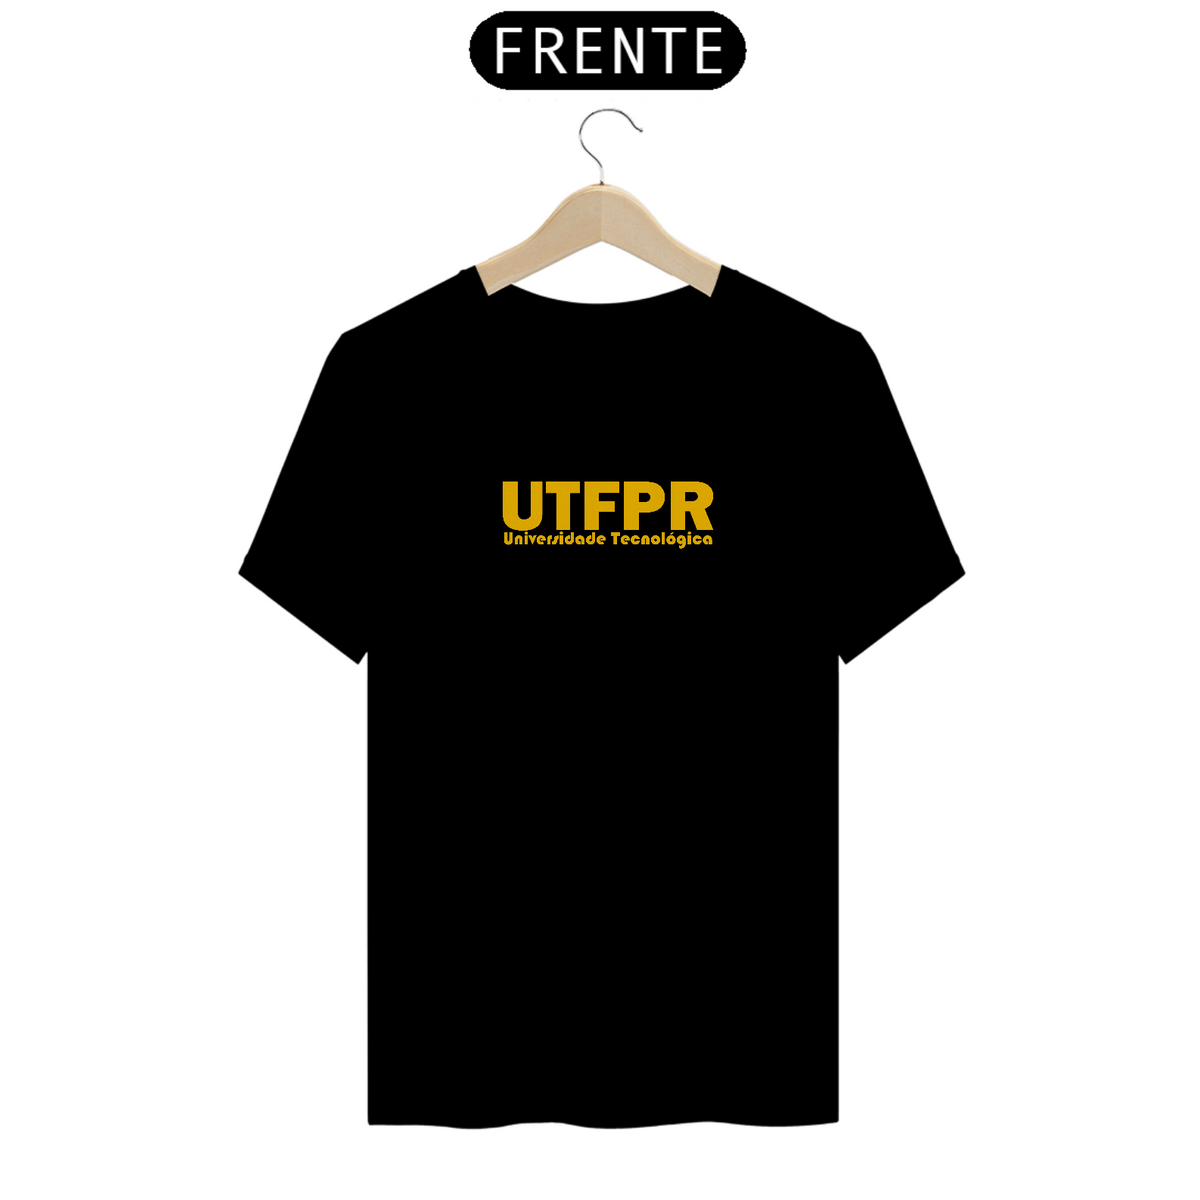 Nome do produto: UTFPR | Universidade tecnológica | Amarela 